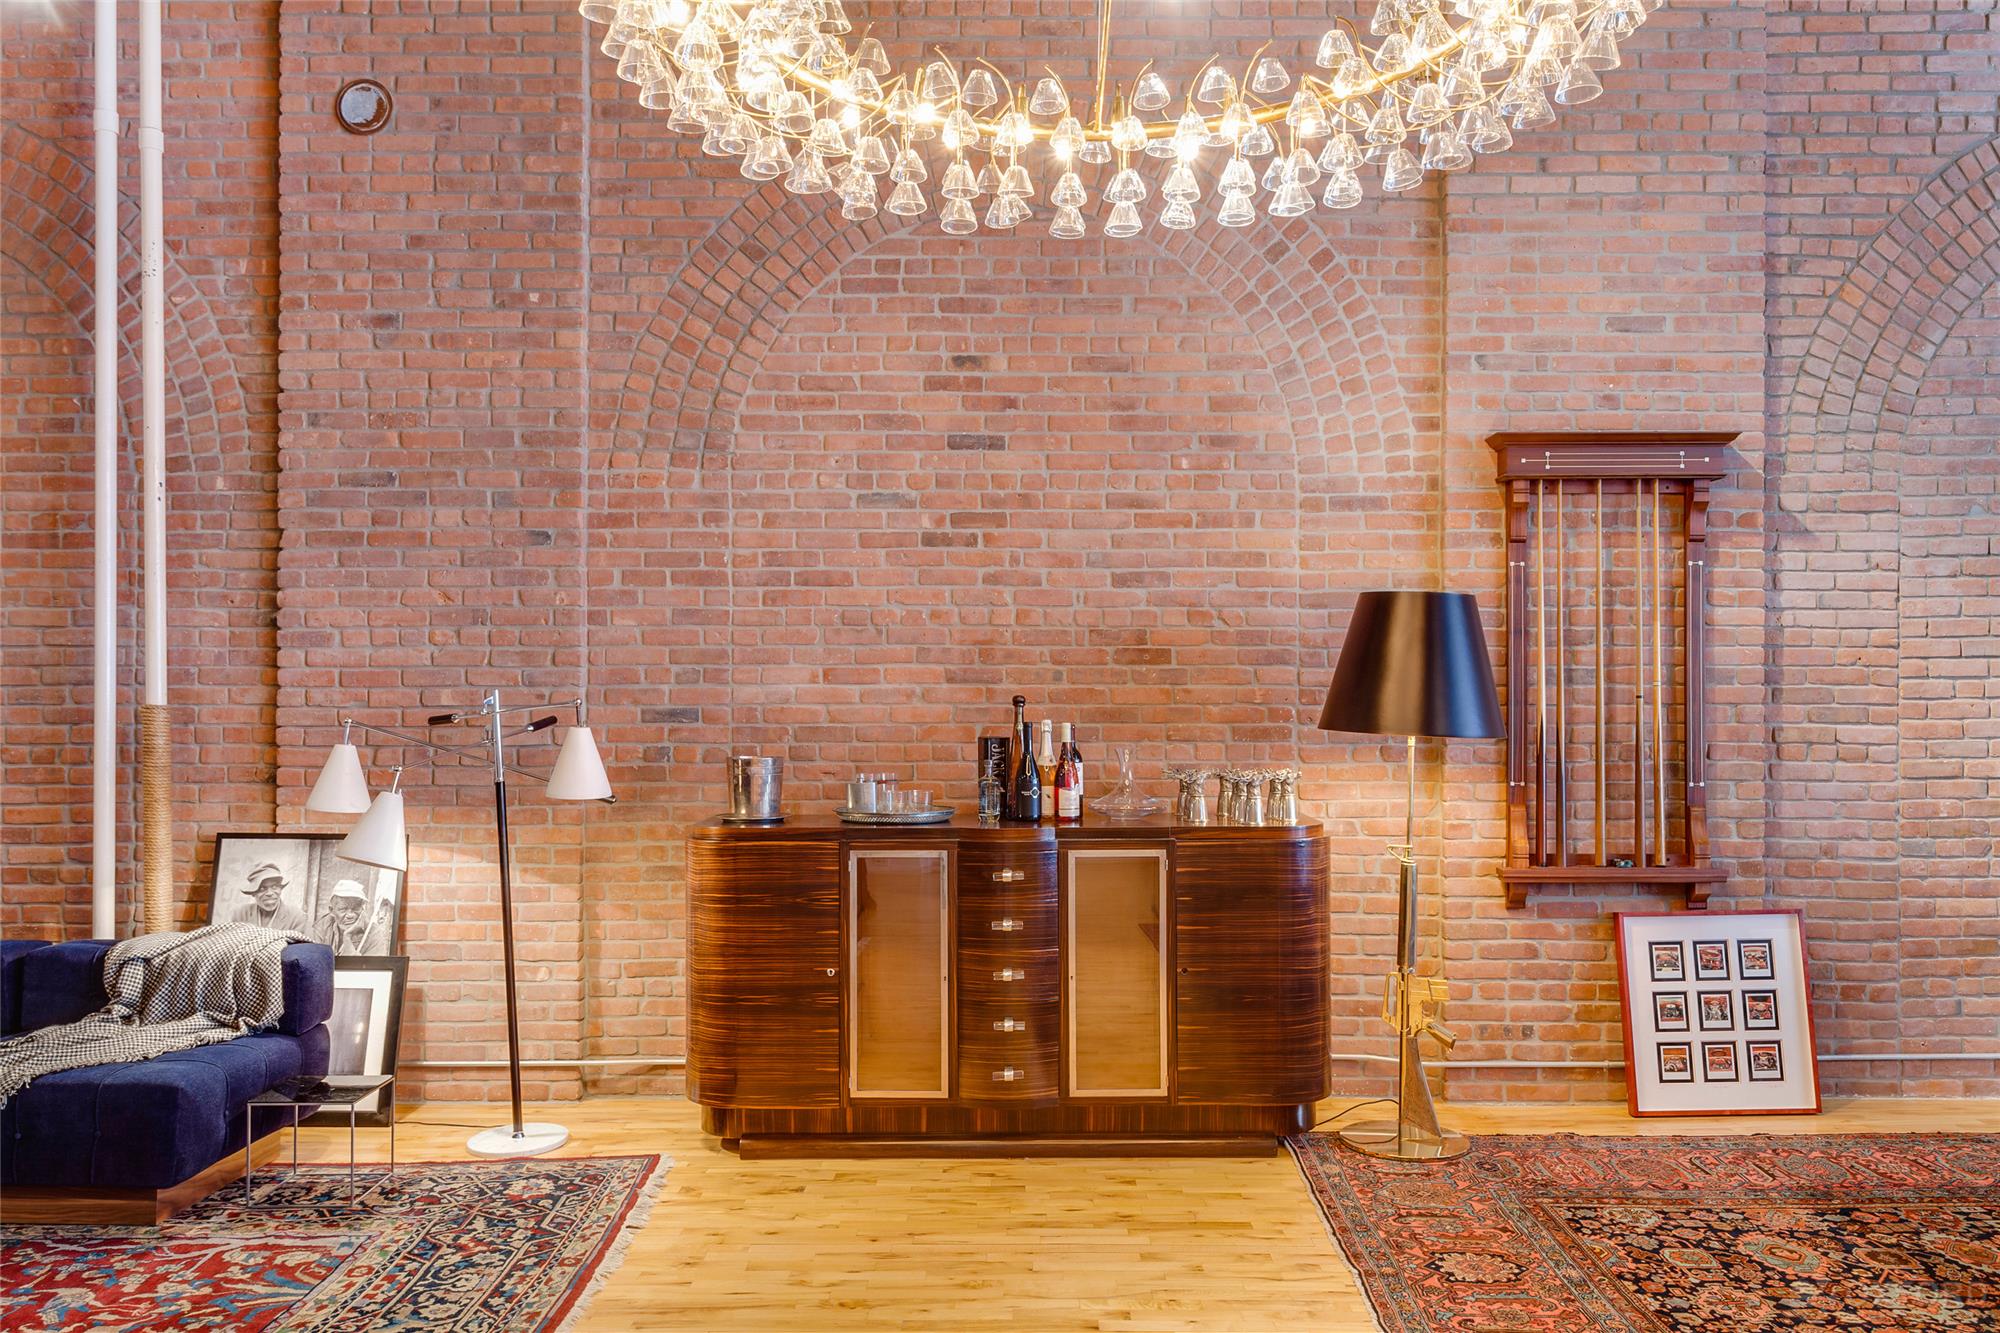 El increíble loft de Adam Levine valuado en $5.5 millones de dólares